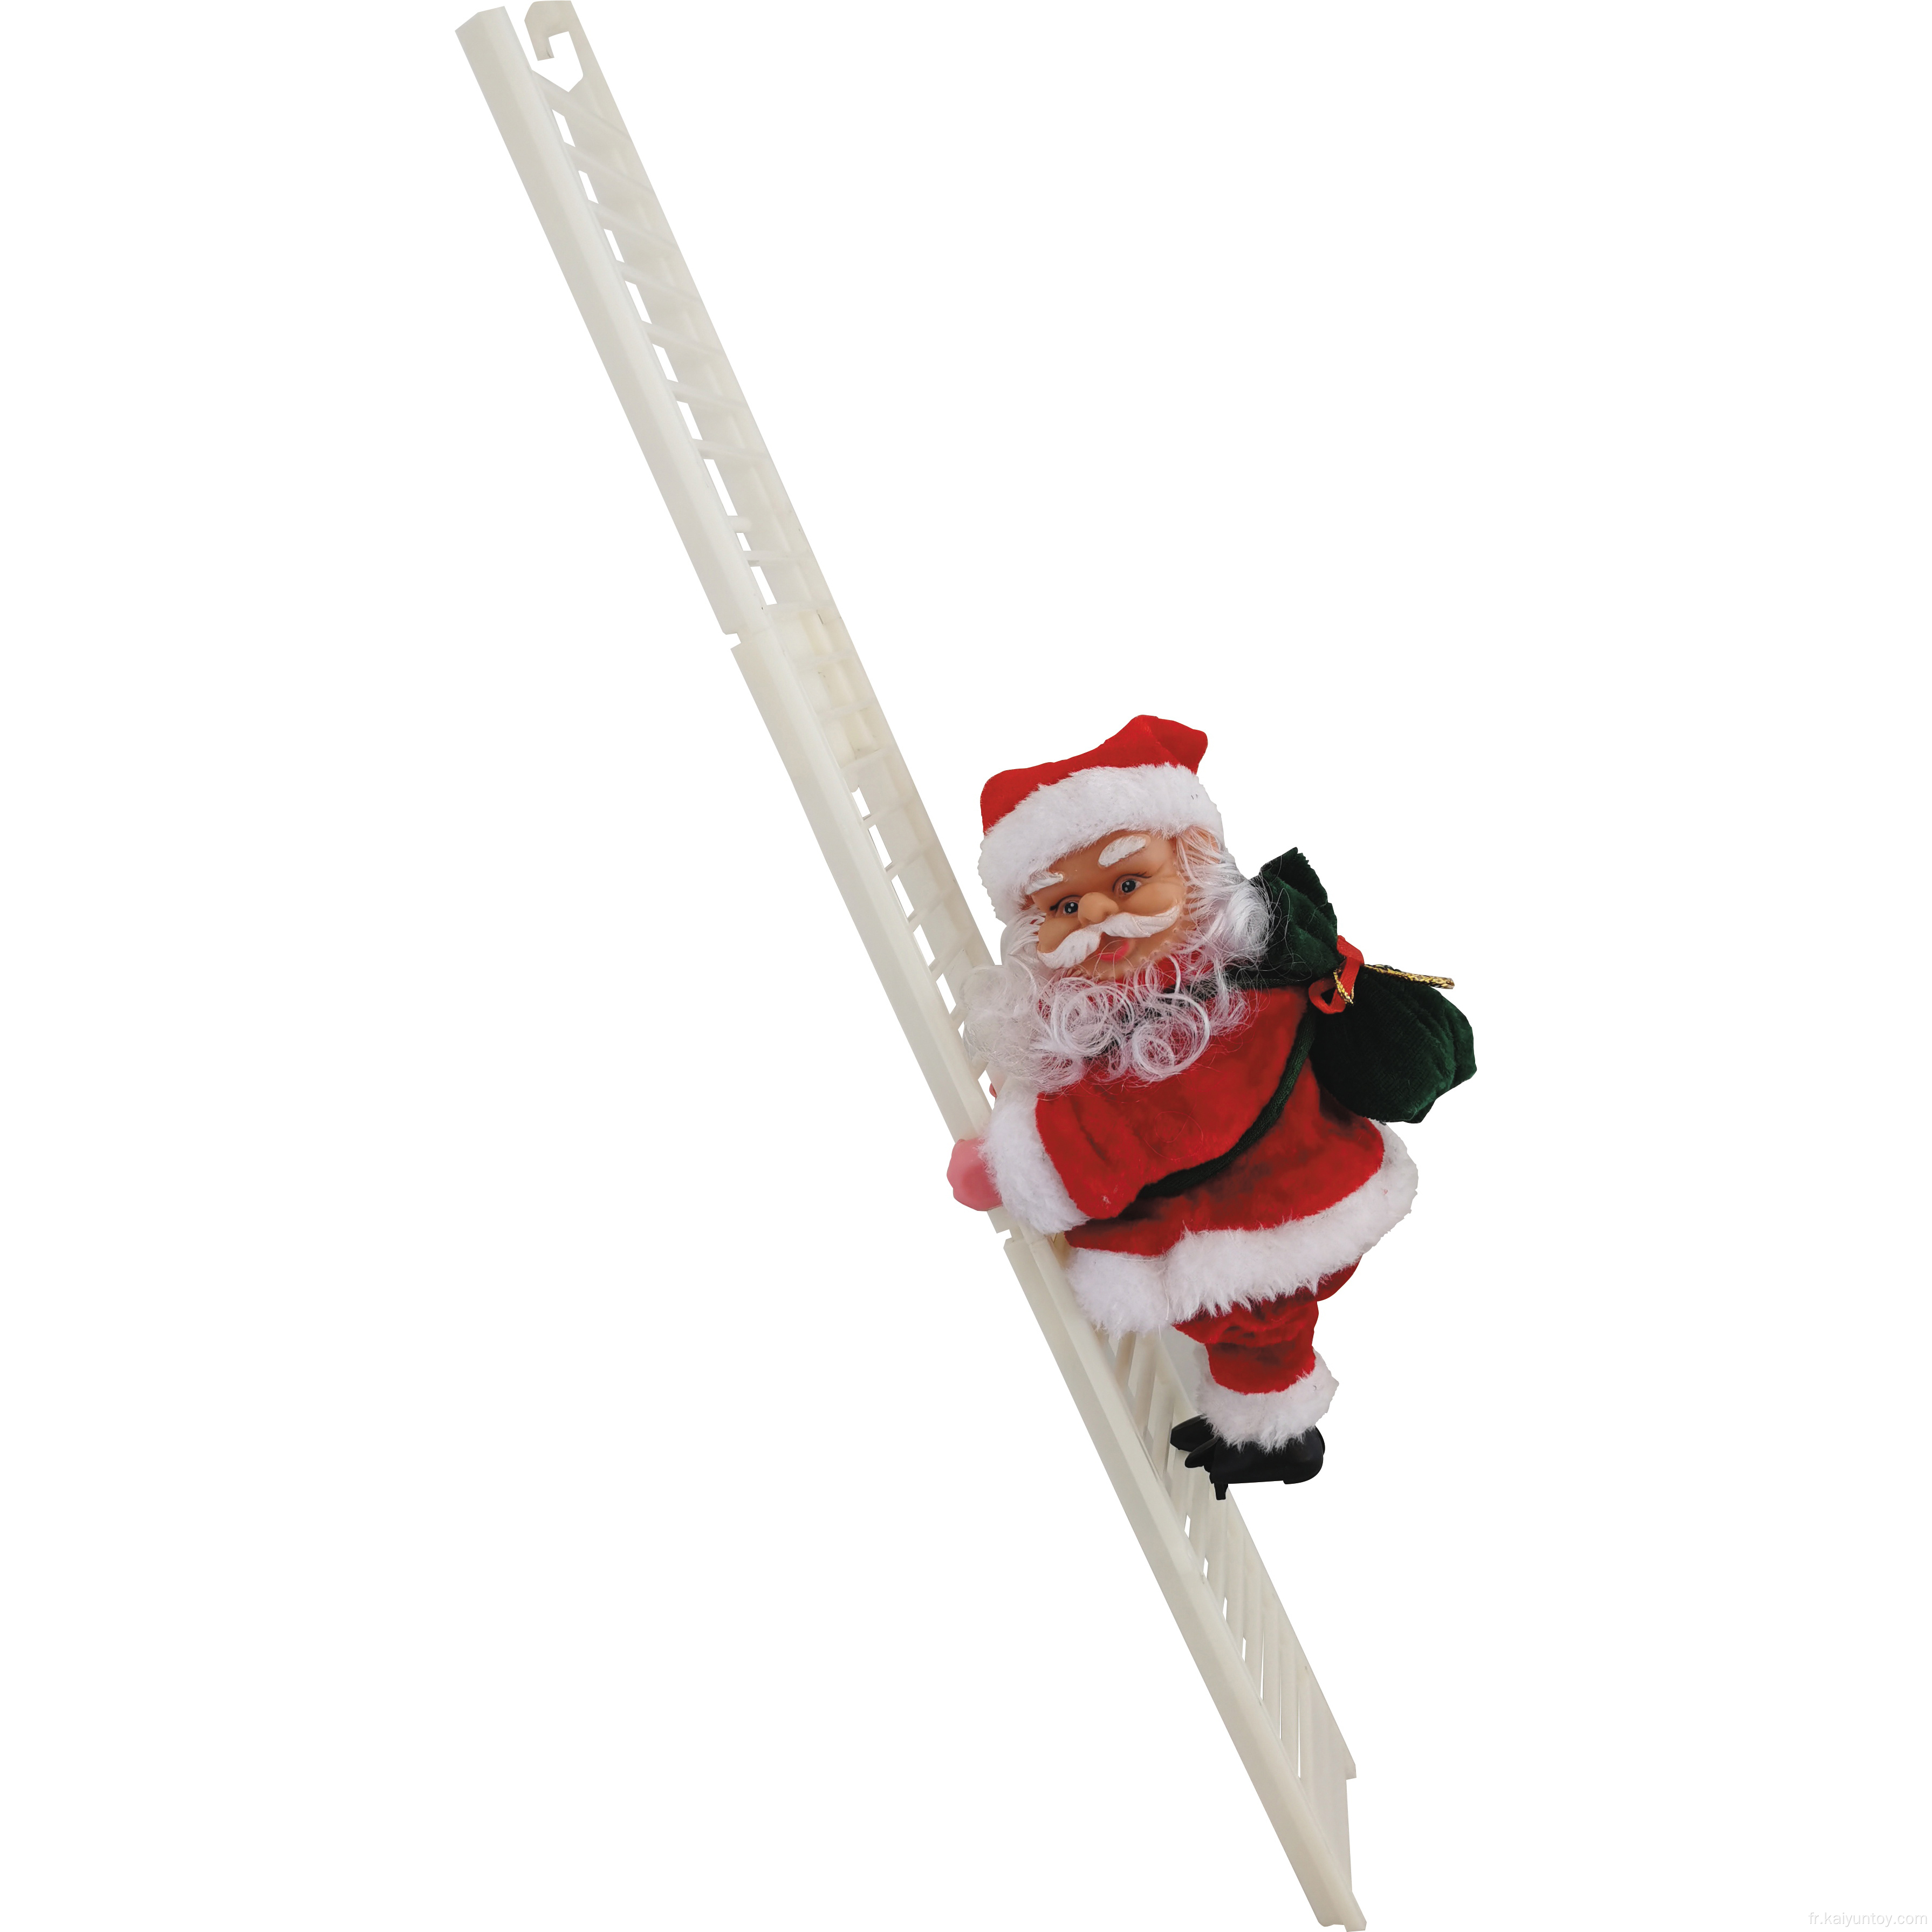 Décoration de Noël de 20 cm d'escalade Santa Claus